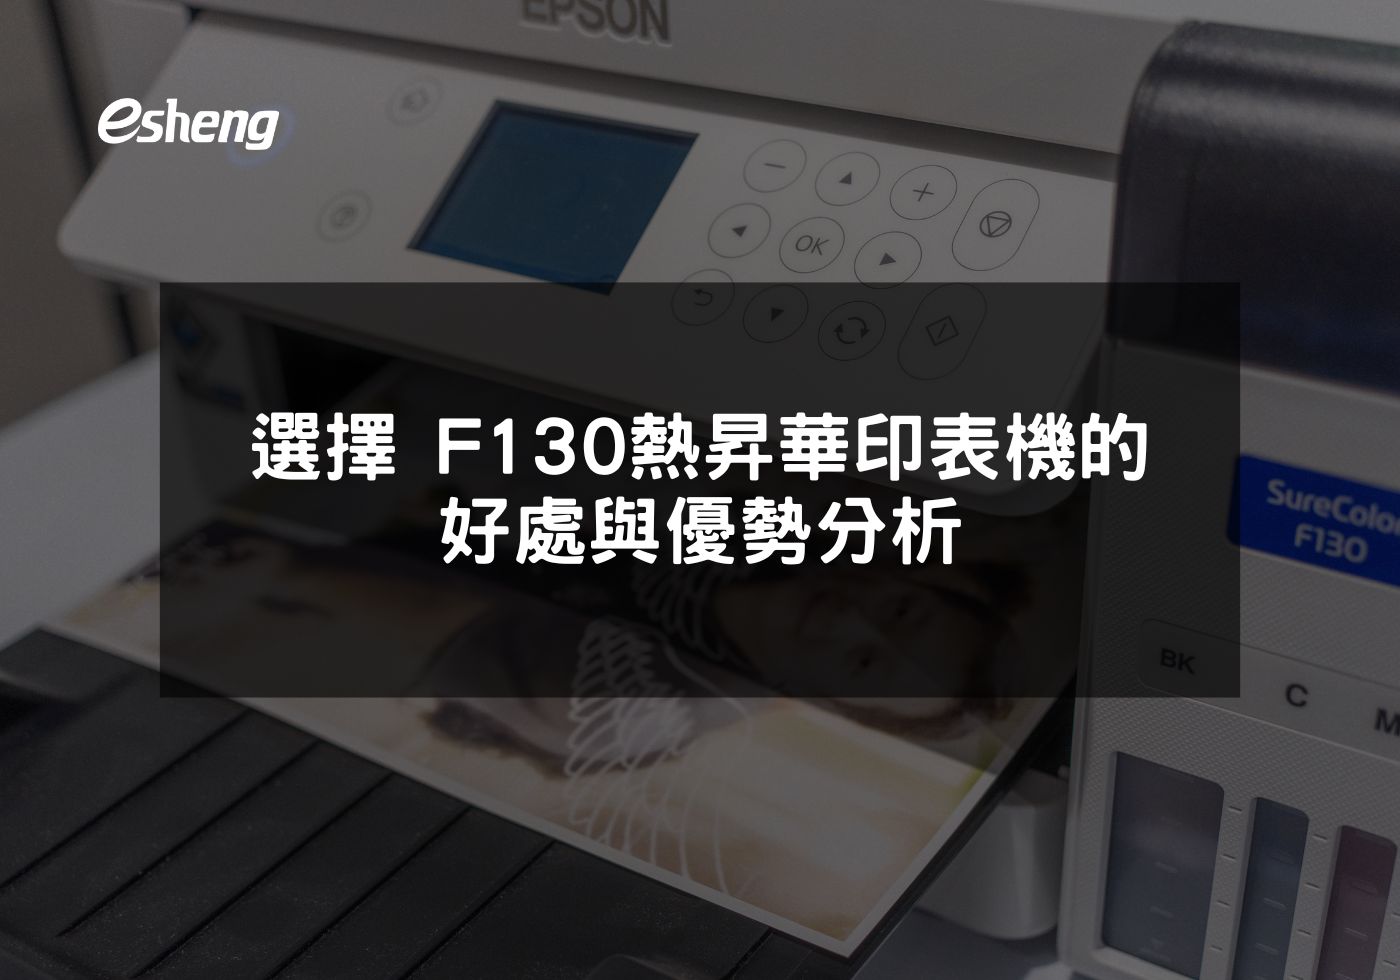 您目前正在查看 選擇EPSON F130熱昇華印表機的好處與優勢分析